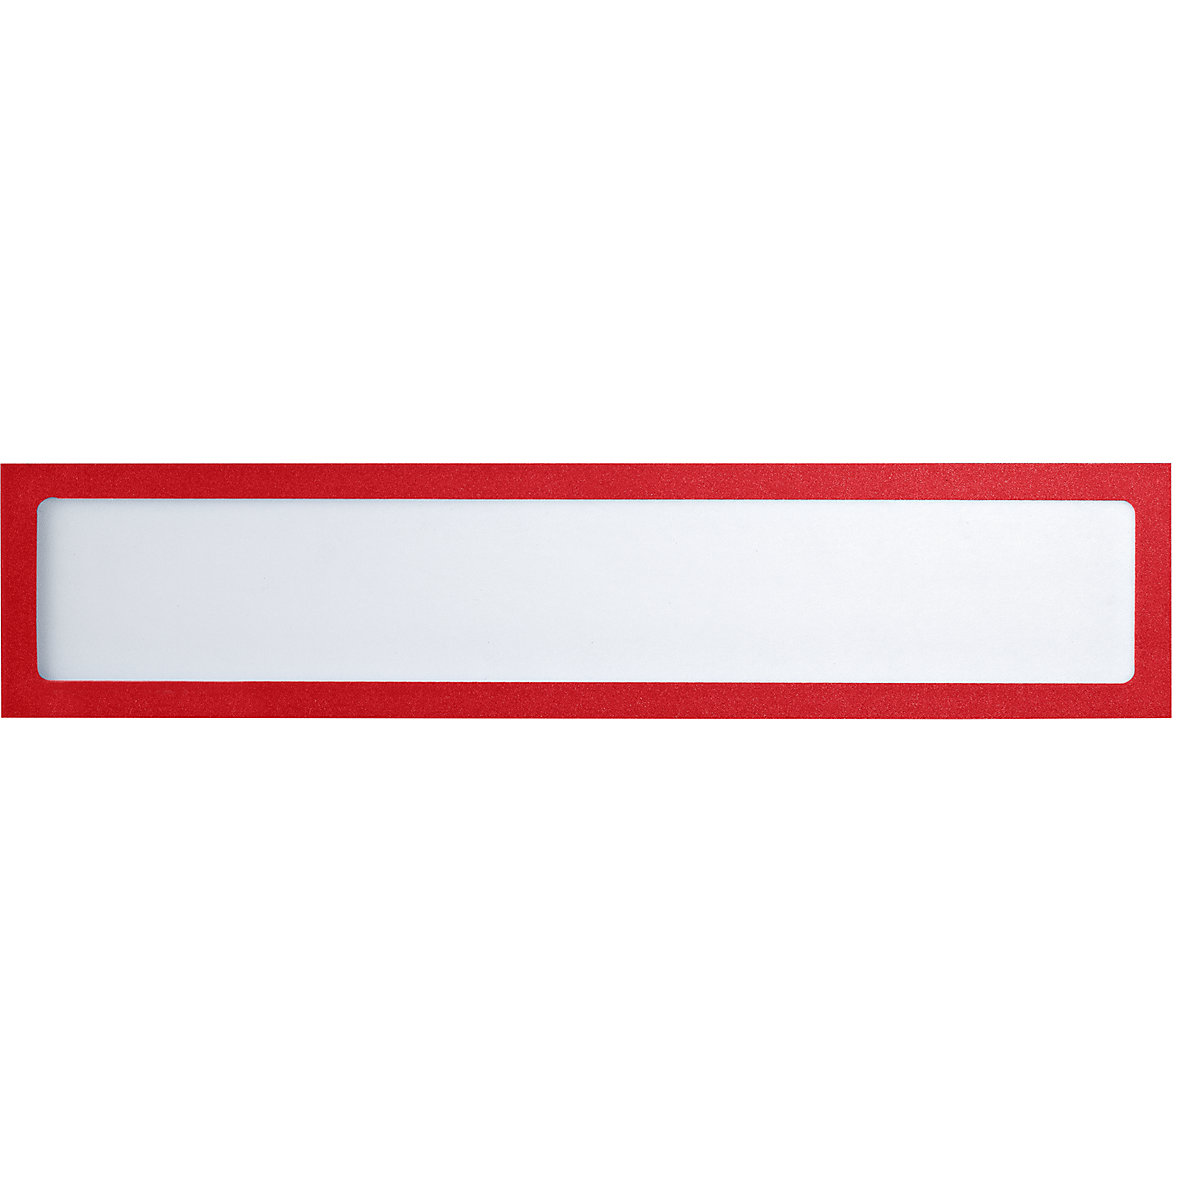 Busta portastampati magnetica – eurokraft basic, per elementi di testo, UNI A4 in orizzontale / UNI A5 in verticale, 312 x 60 mm, telaio rosso, conf. 10 pz.-5